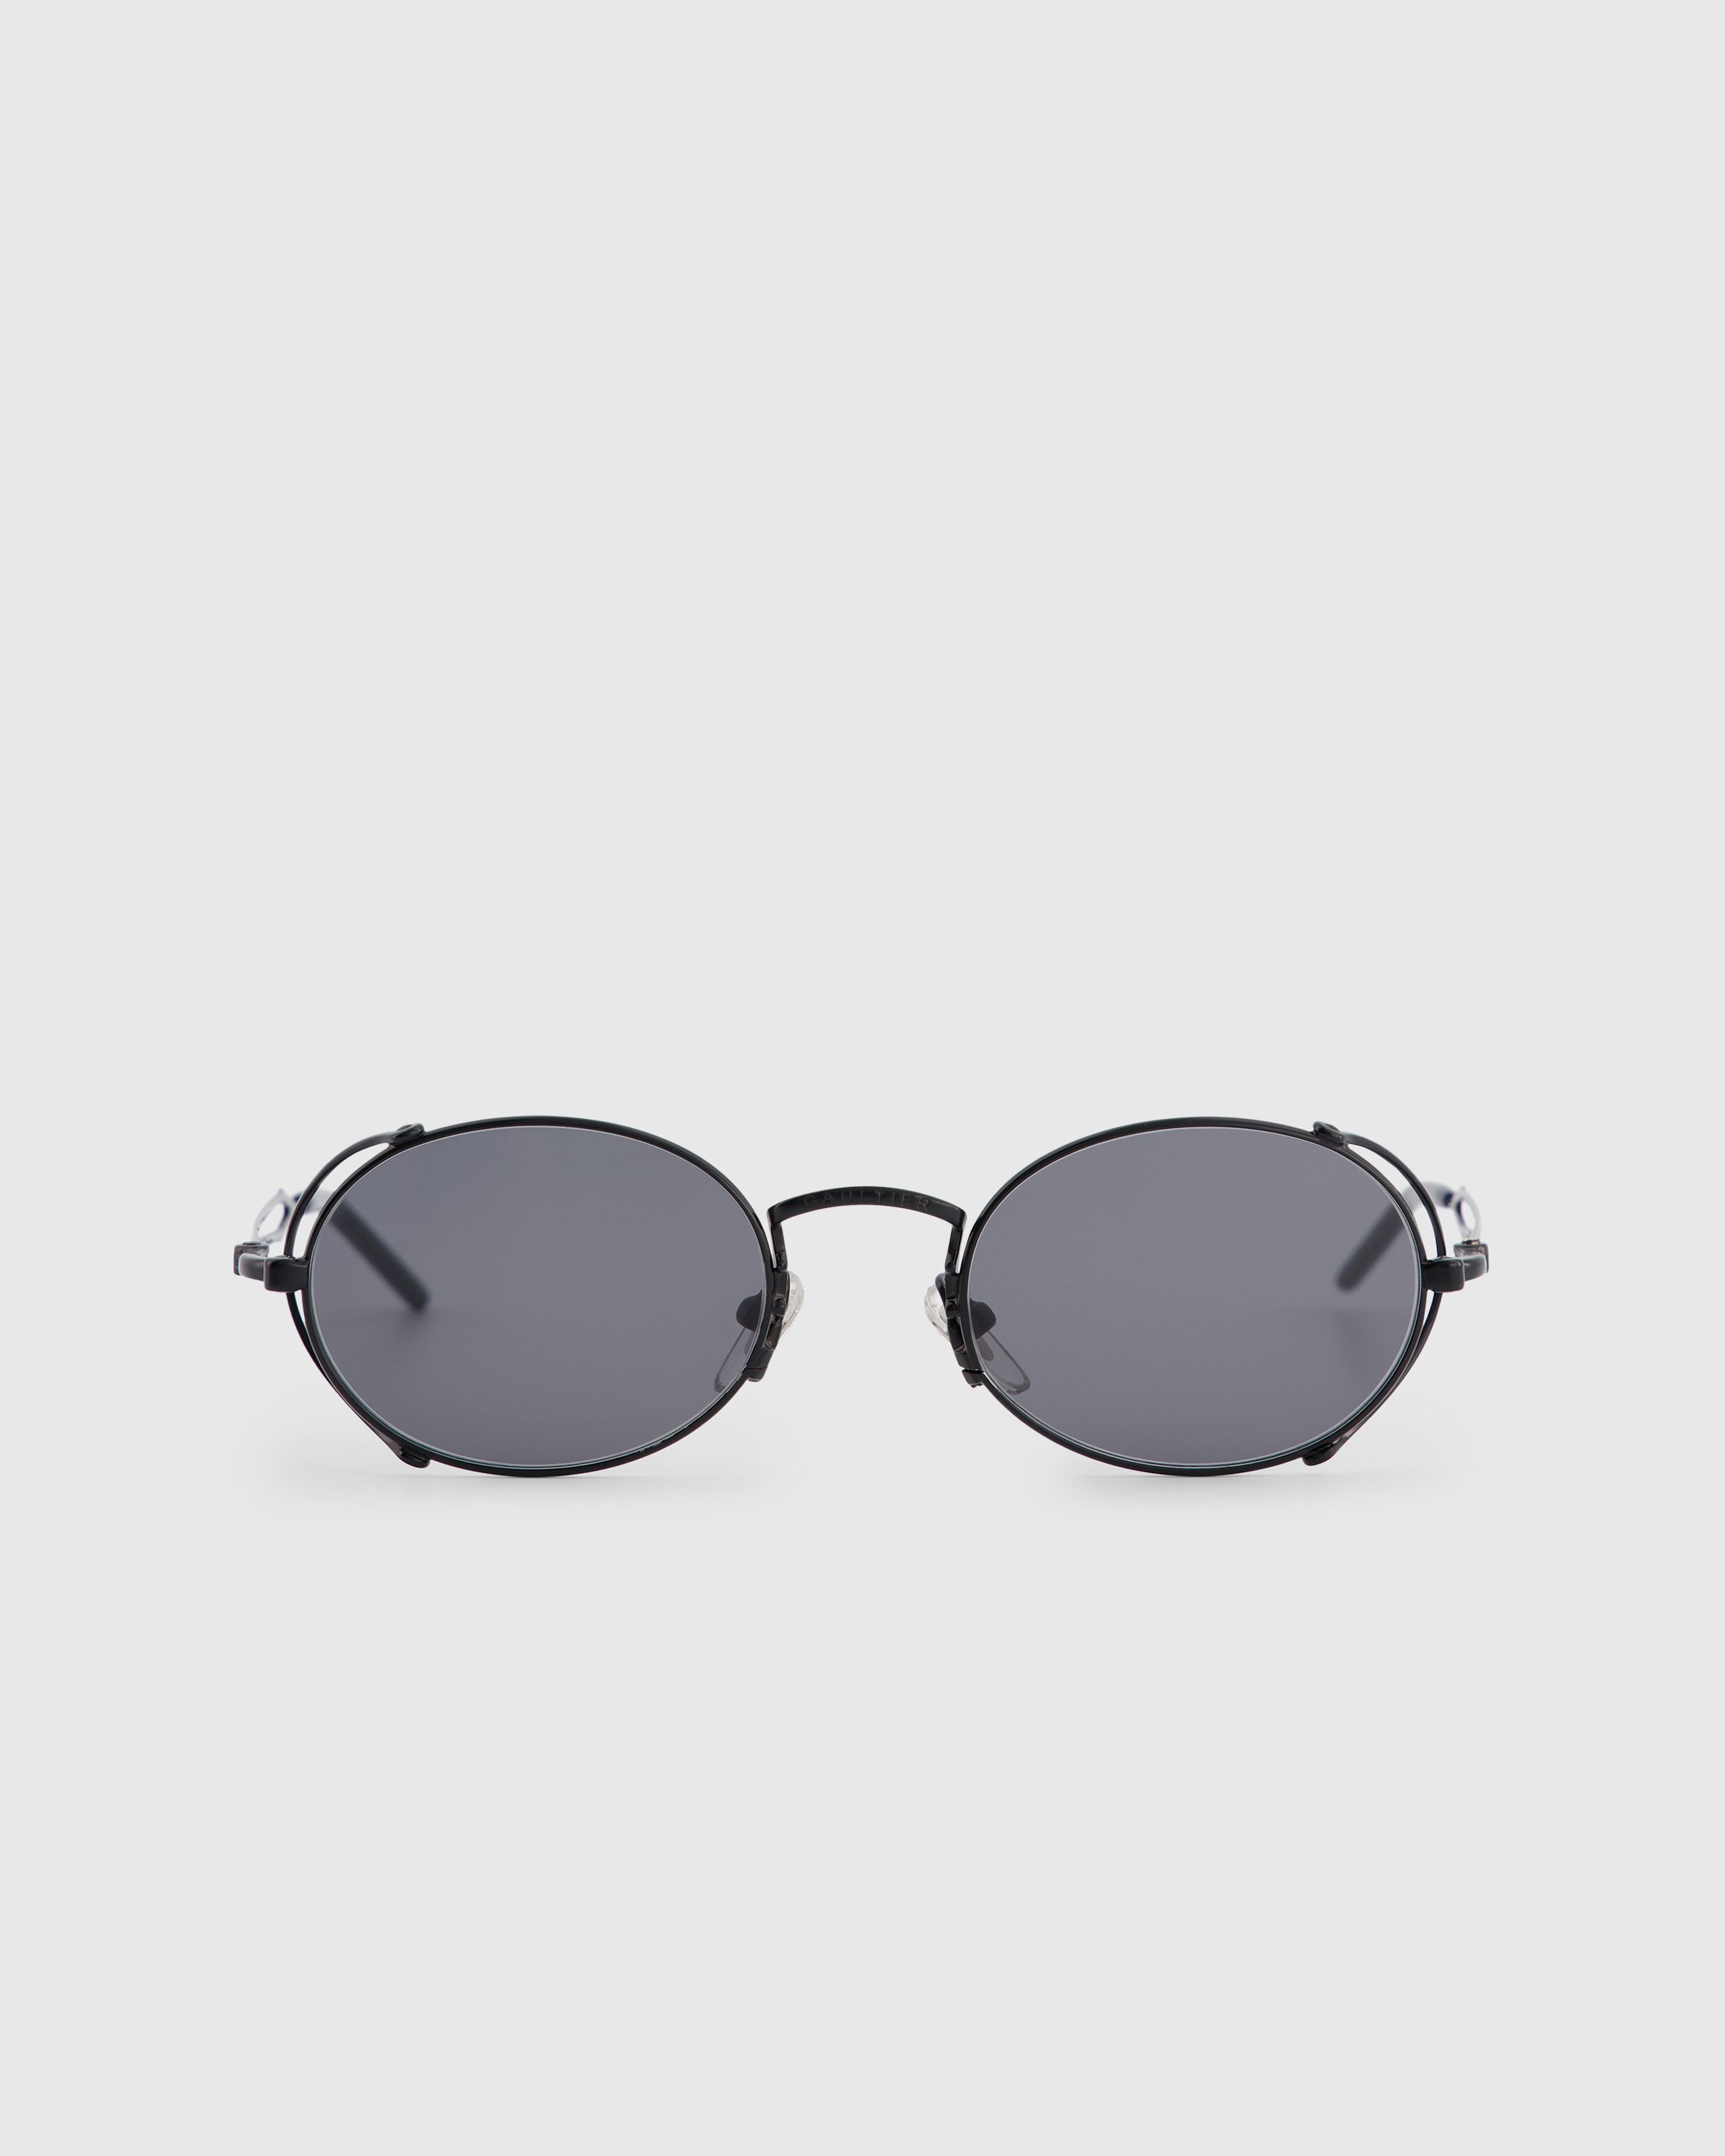 Jean Paul Gaultier x Burna Boy - 55-3175 Arceau Sunglasses Black - Accessories - Black - Image 1